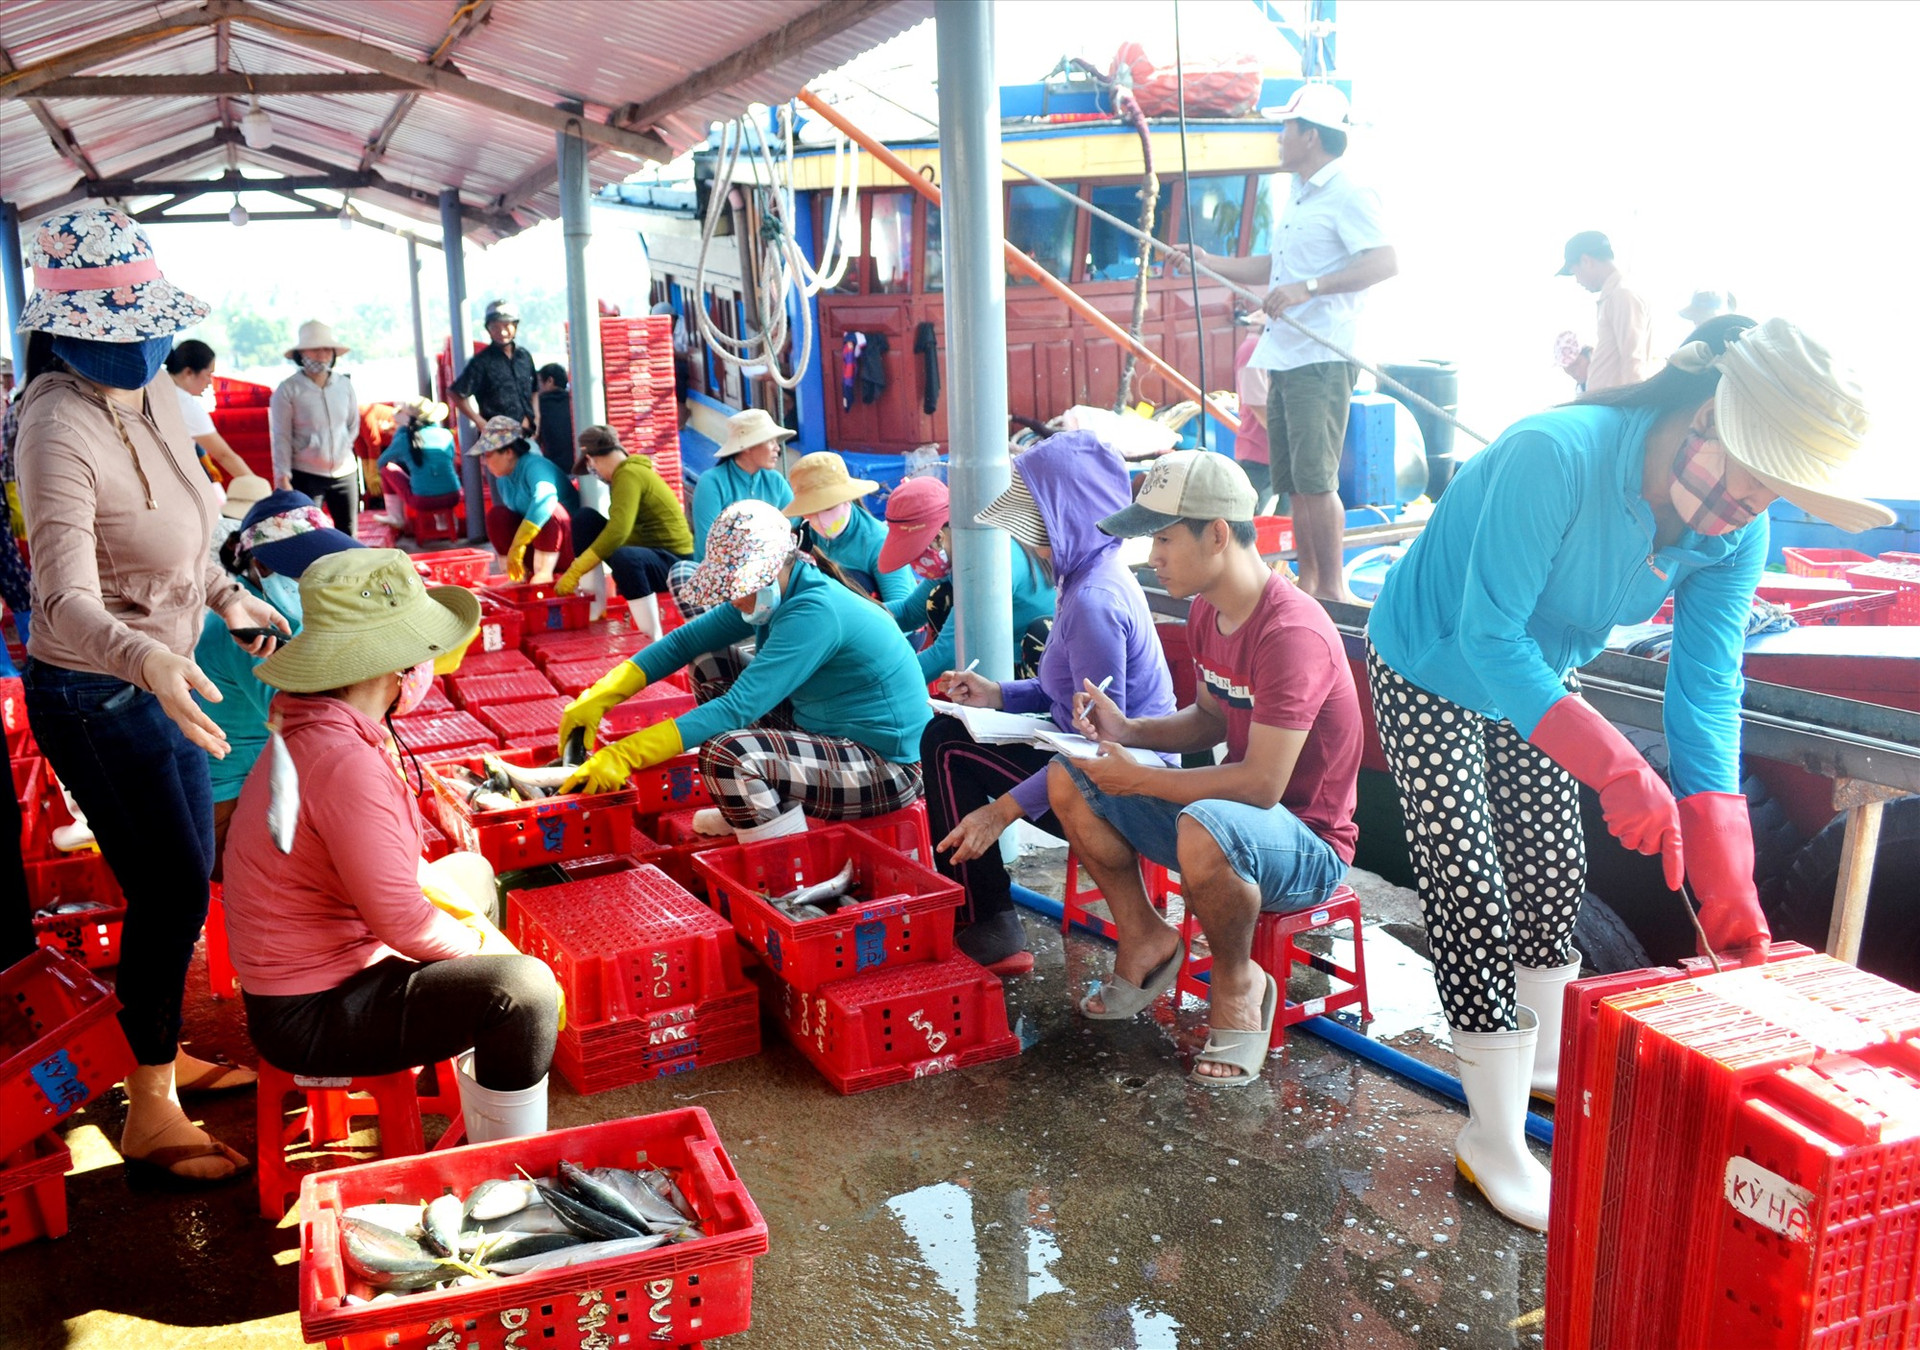 Quản lý và truy xuất nguồn gốc hải sản đang là điểm yếu trong chống khai thác IUU của tỉnh do hạ tầng nghề cá chưa đáp ứng yêu cầu. Trong ảnh: Ngư dân cập cảng cá Tam Quang để bán hải sản. Ảnh: VIỆT NGUYỄN